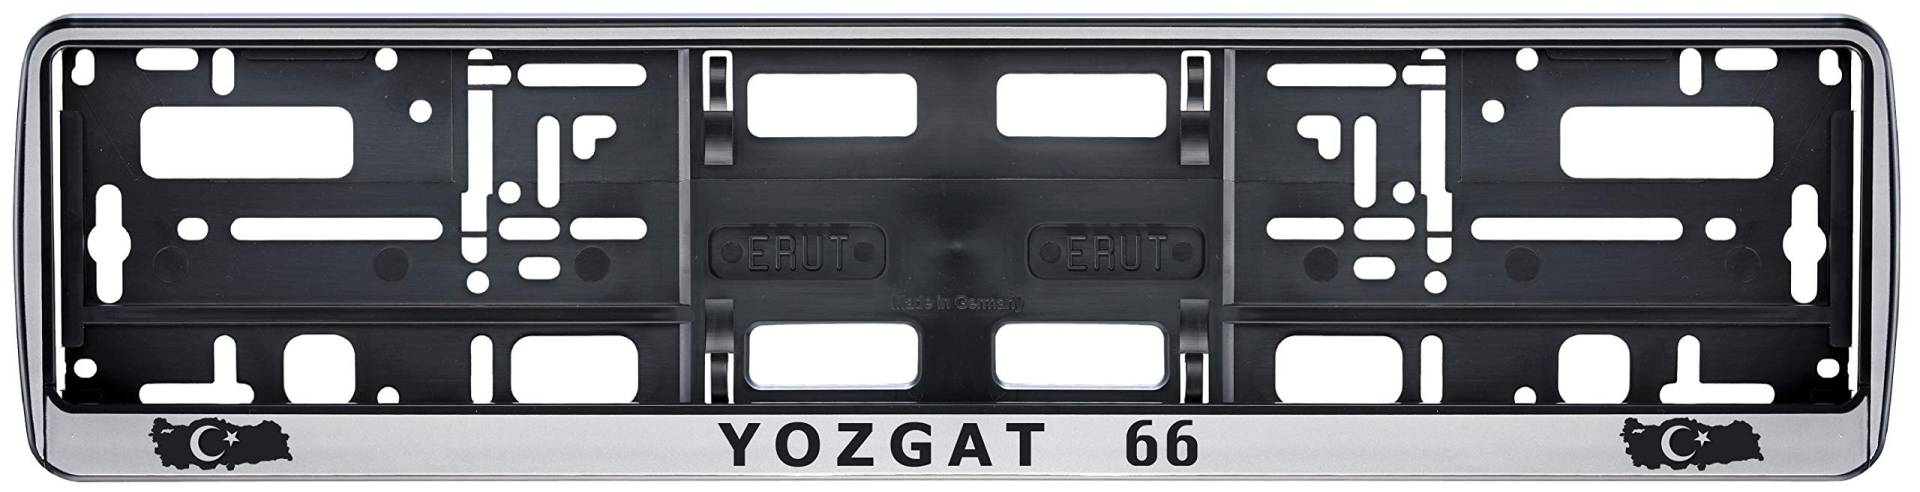 Auto Kennzeichenhalter in der Farbe Silber/Schwarz Nummernschildhalterung Auto, Nummernschildhalter Türkei Flagge 66 Yozgat 2 Stück von aina